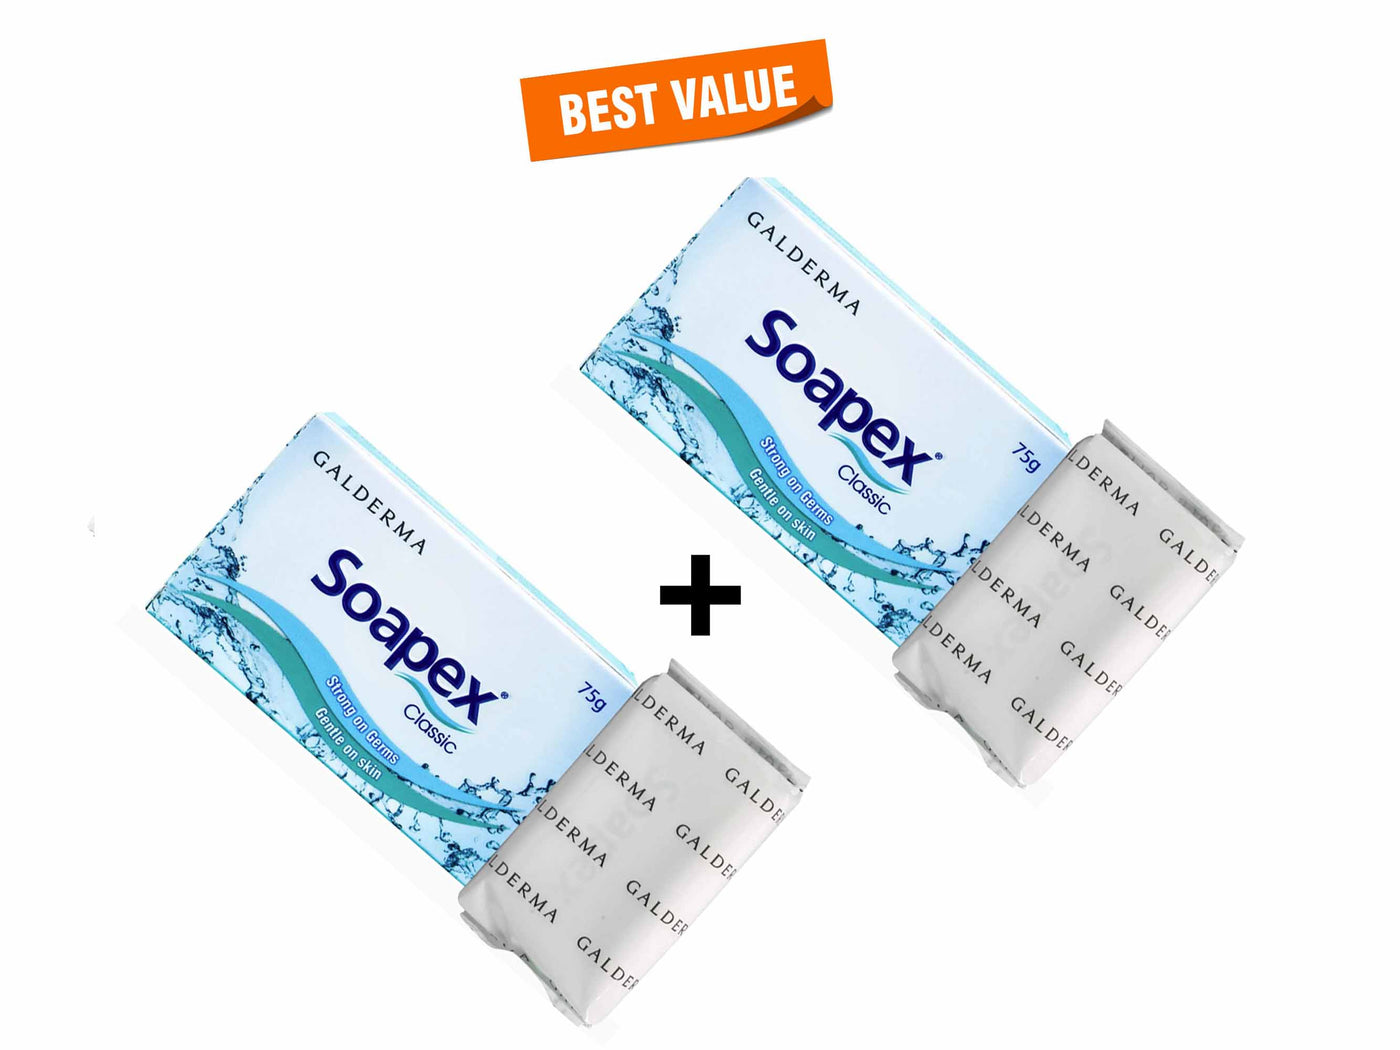 Soapex Classic Soap - Clinikally